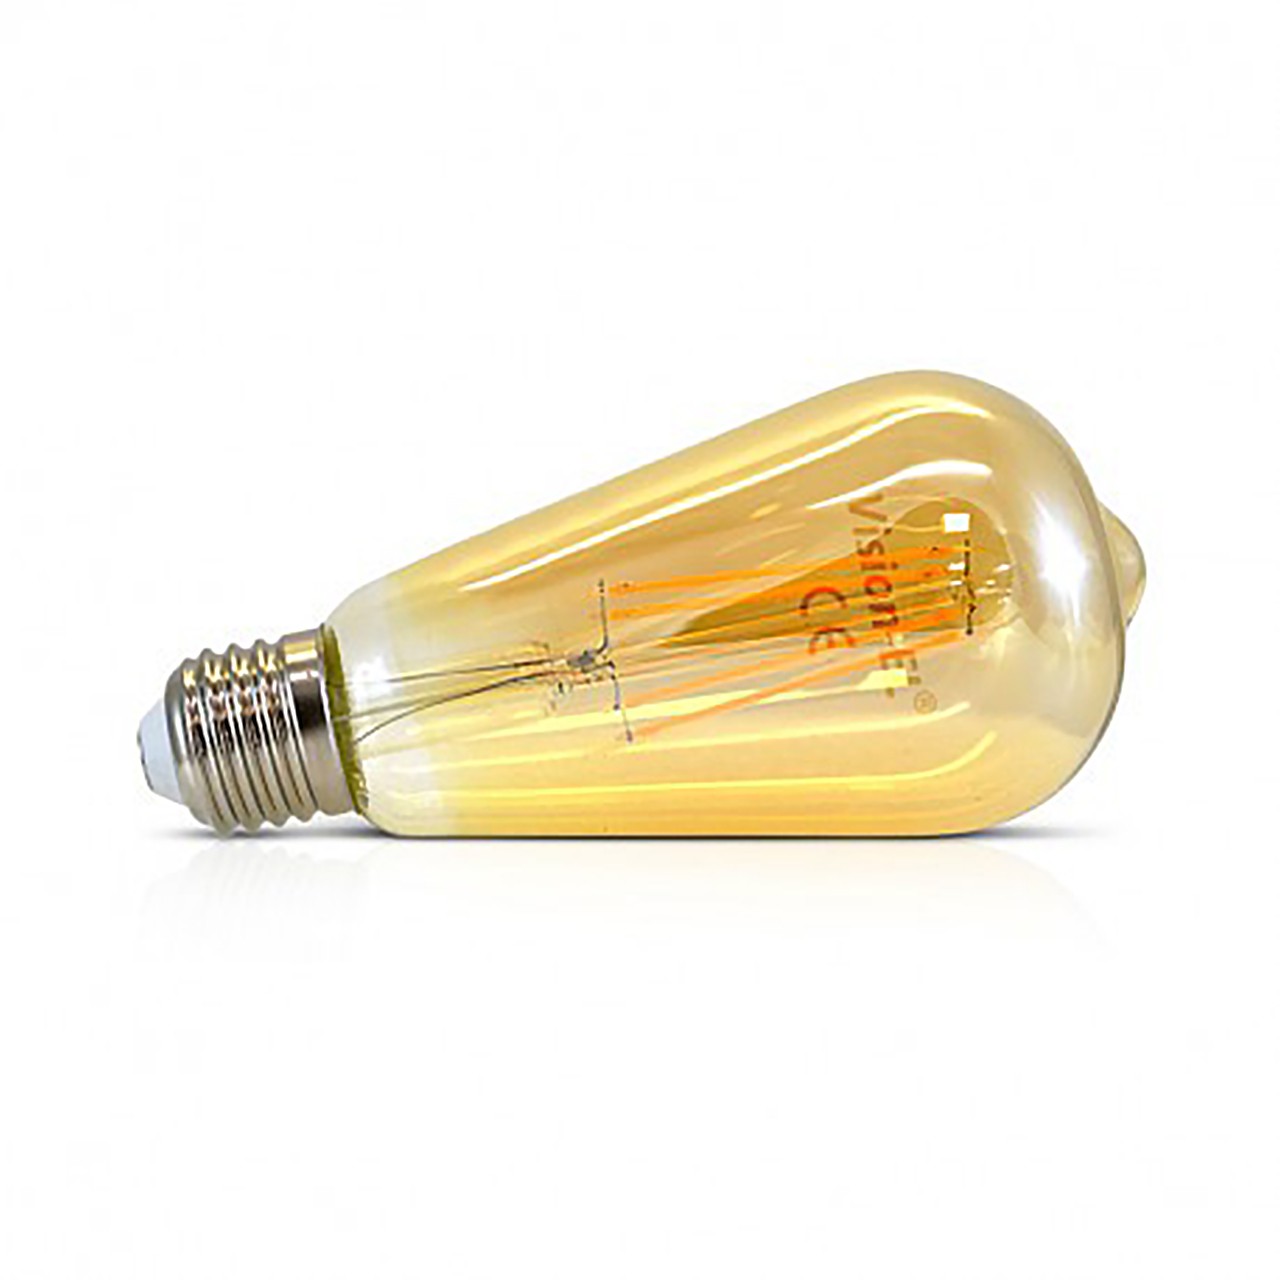 Ampoule LED filament B22 8W 950Lm 2700K - garantie 2 ans